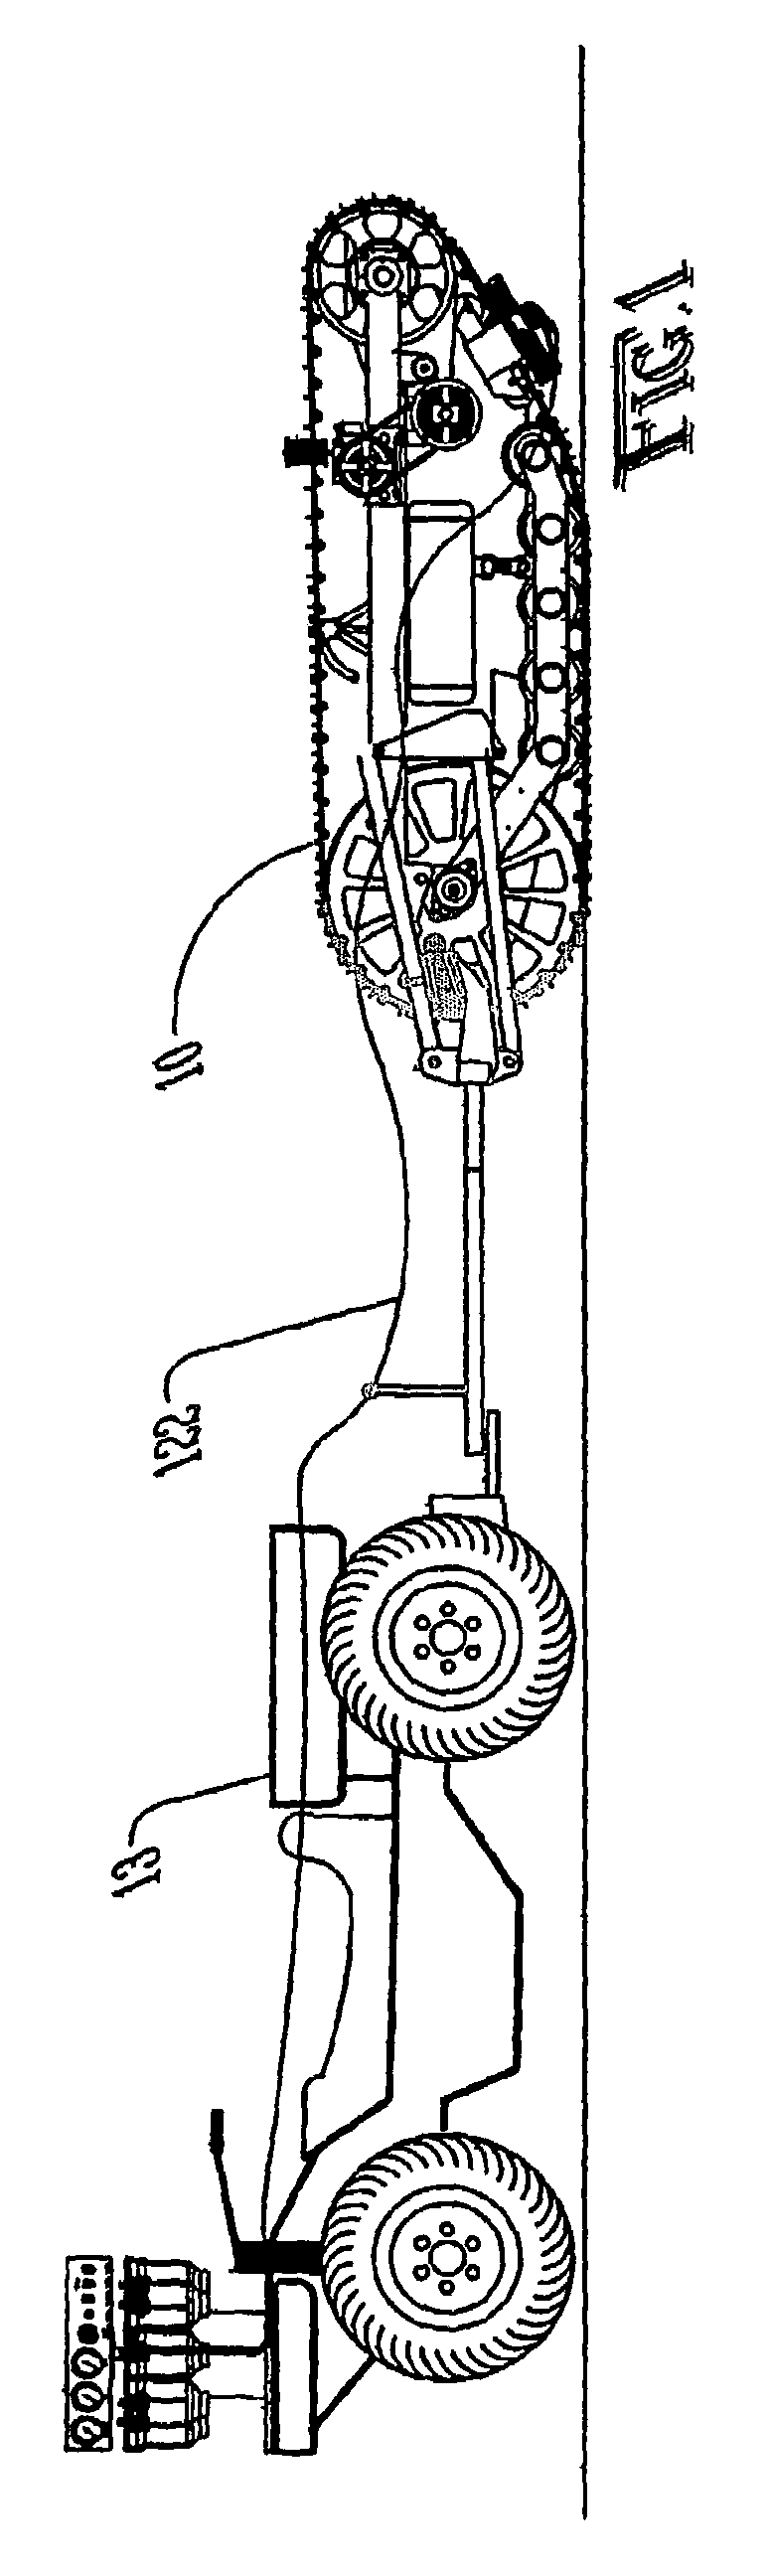 Soil sampler apparatus and method